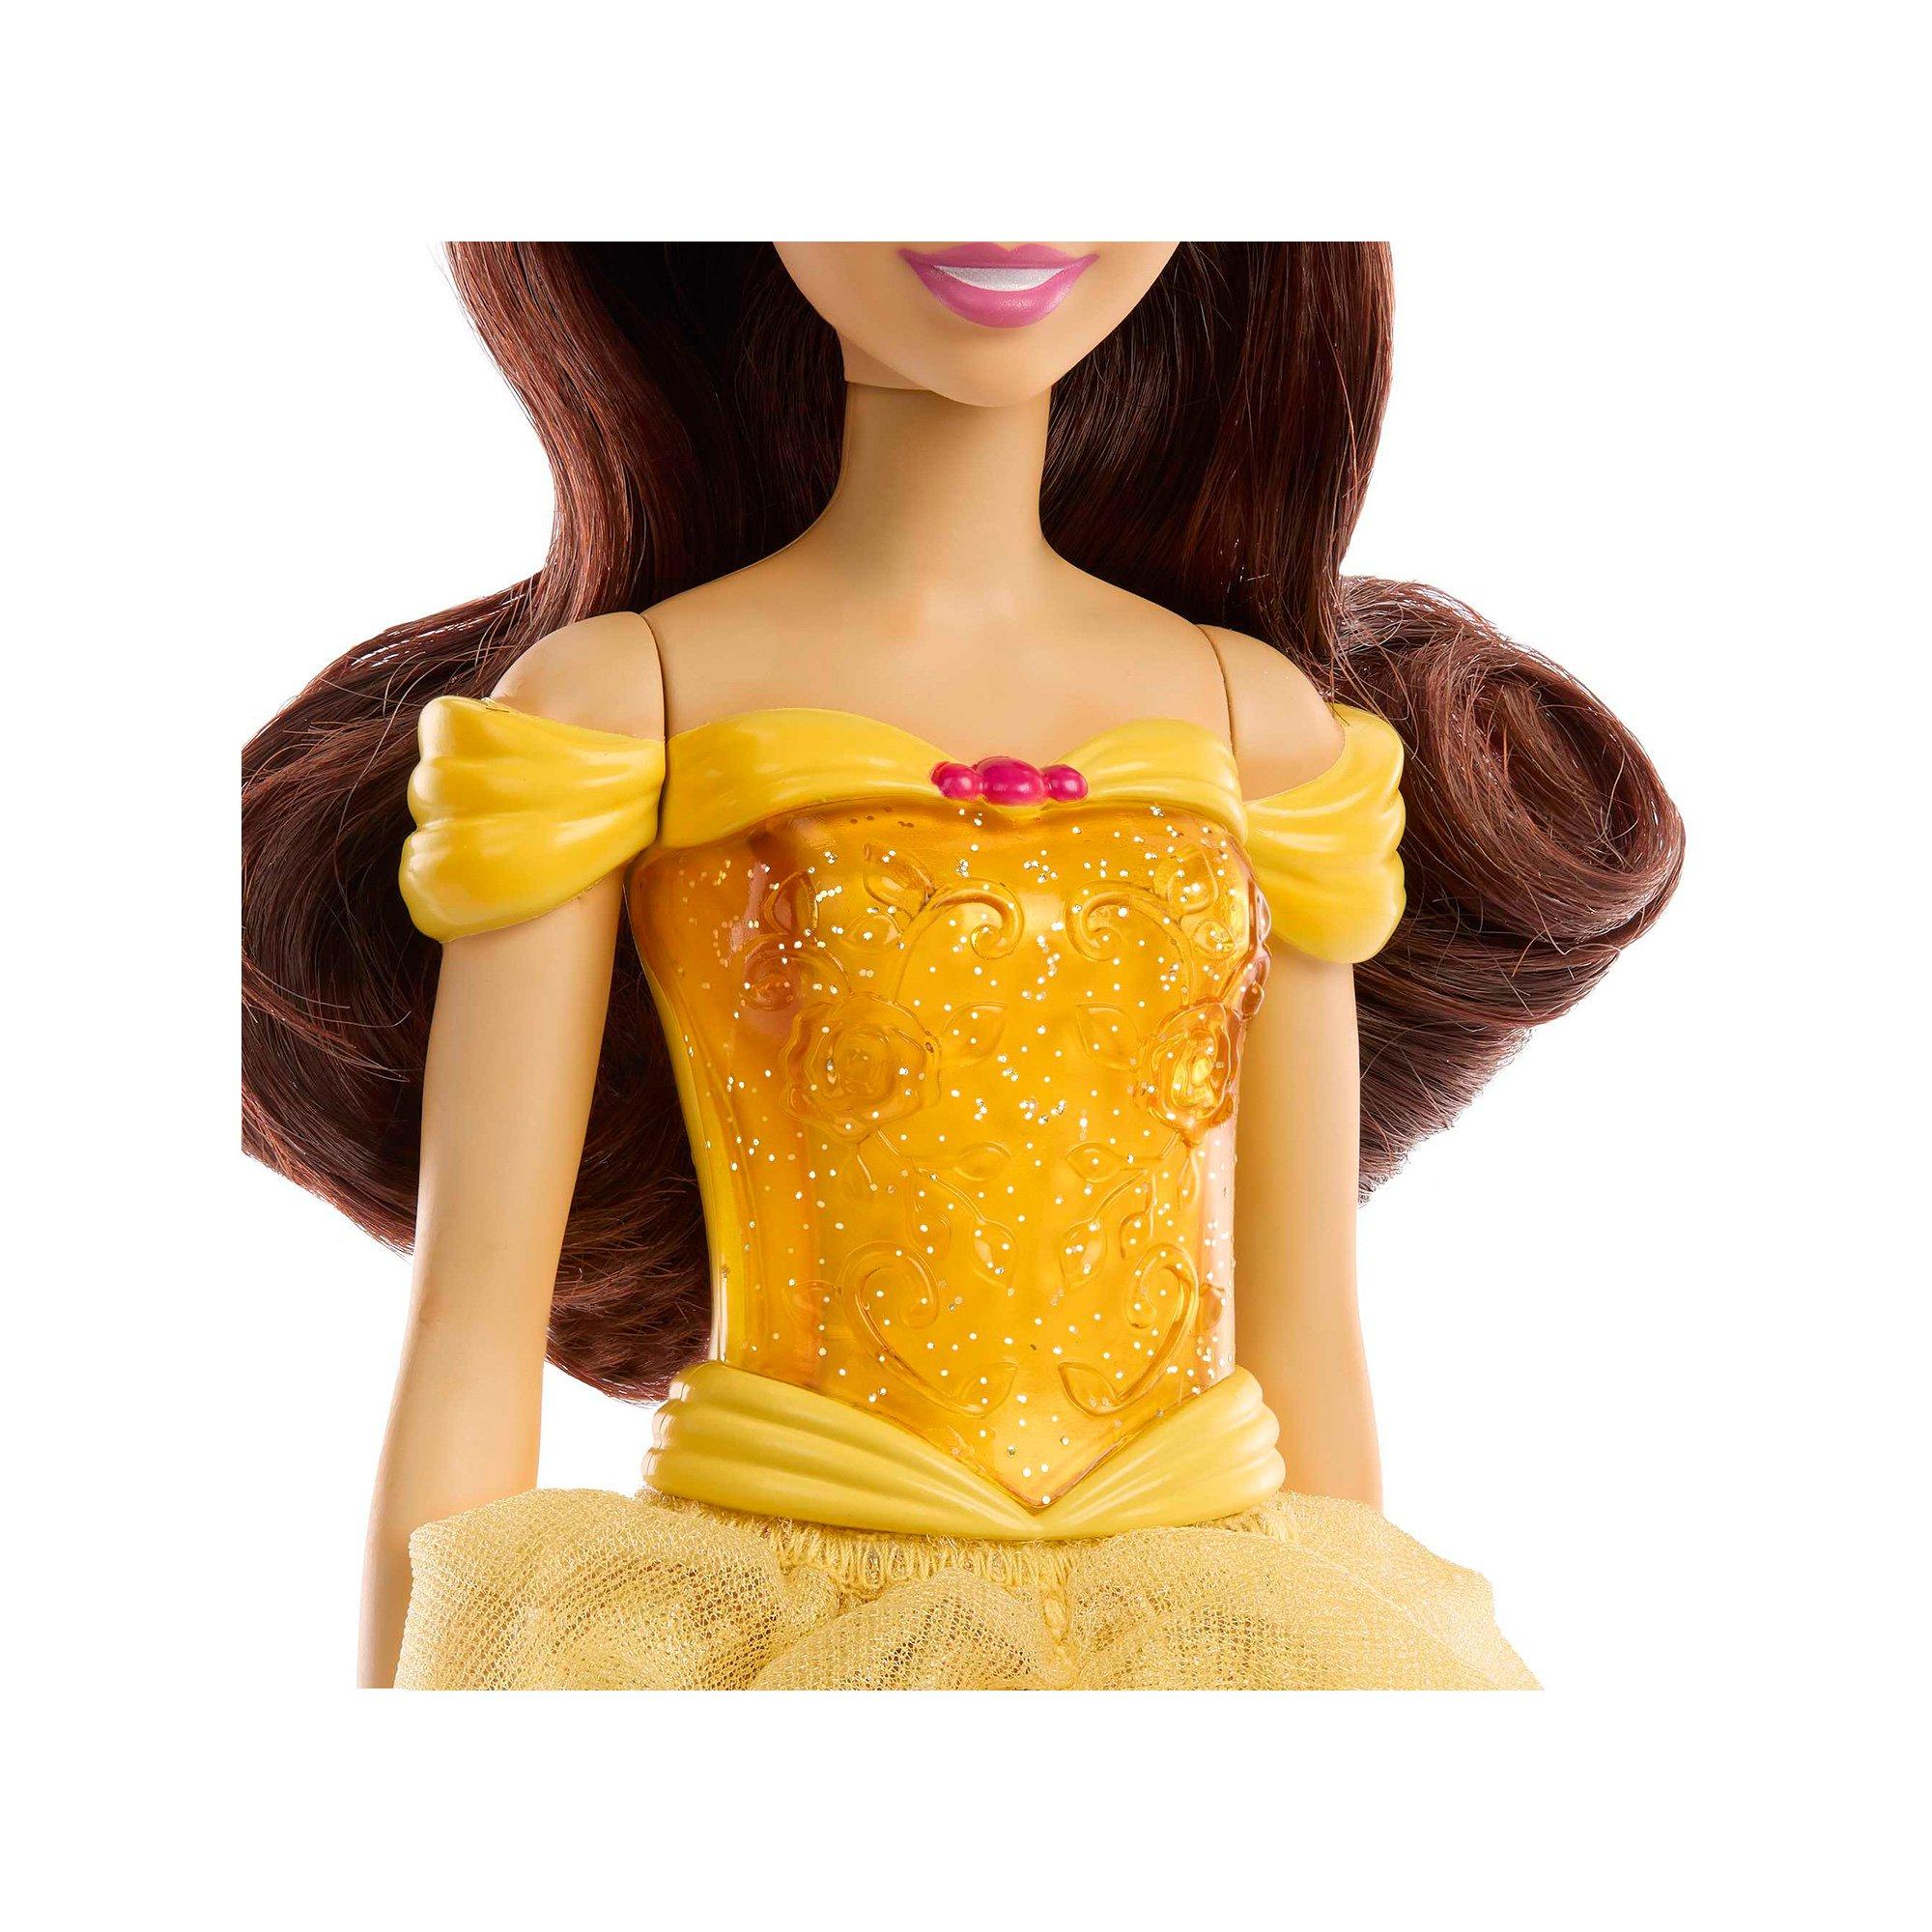 Mattel  Disney Prinzessin Belle Puppe 